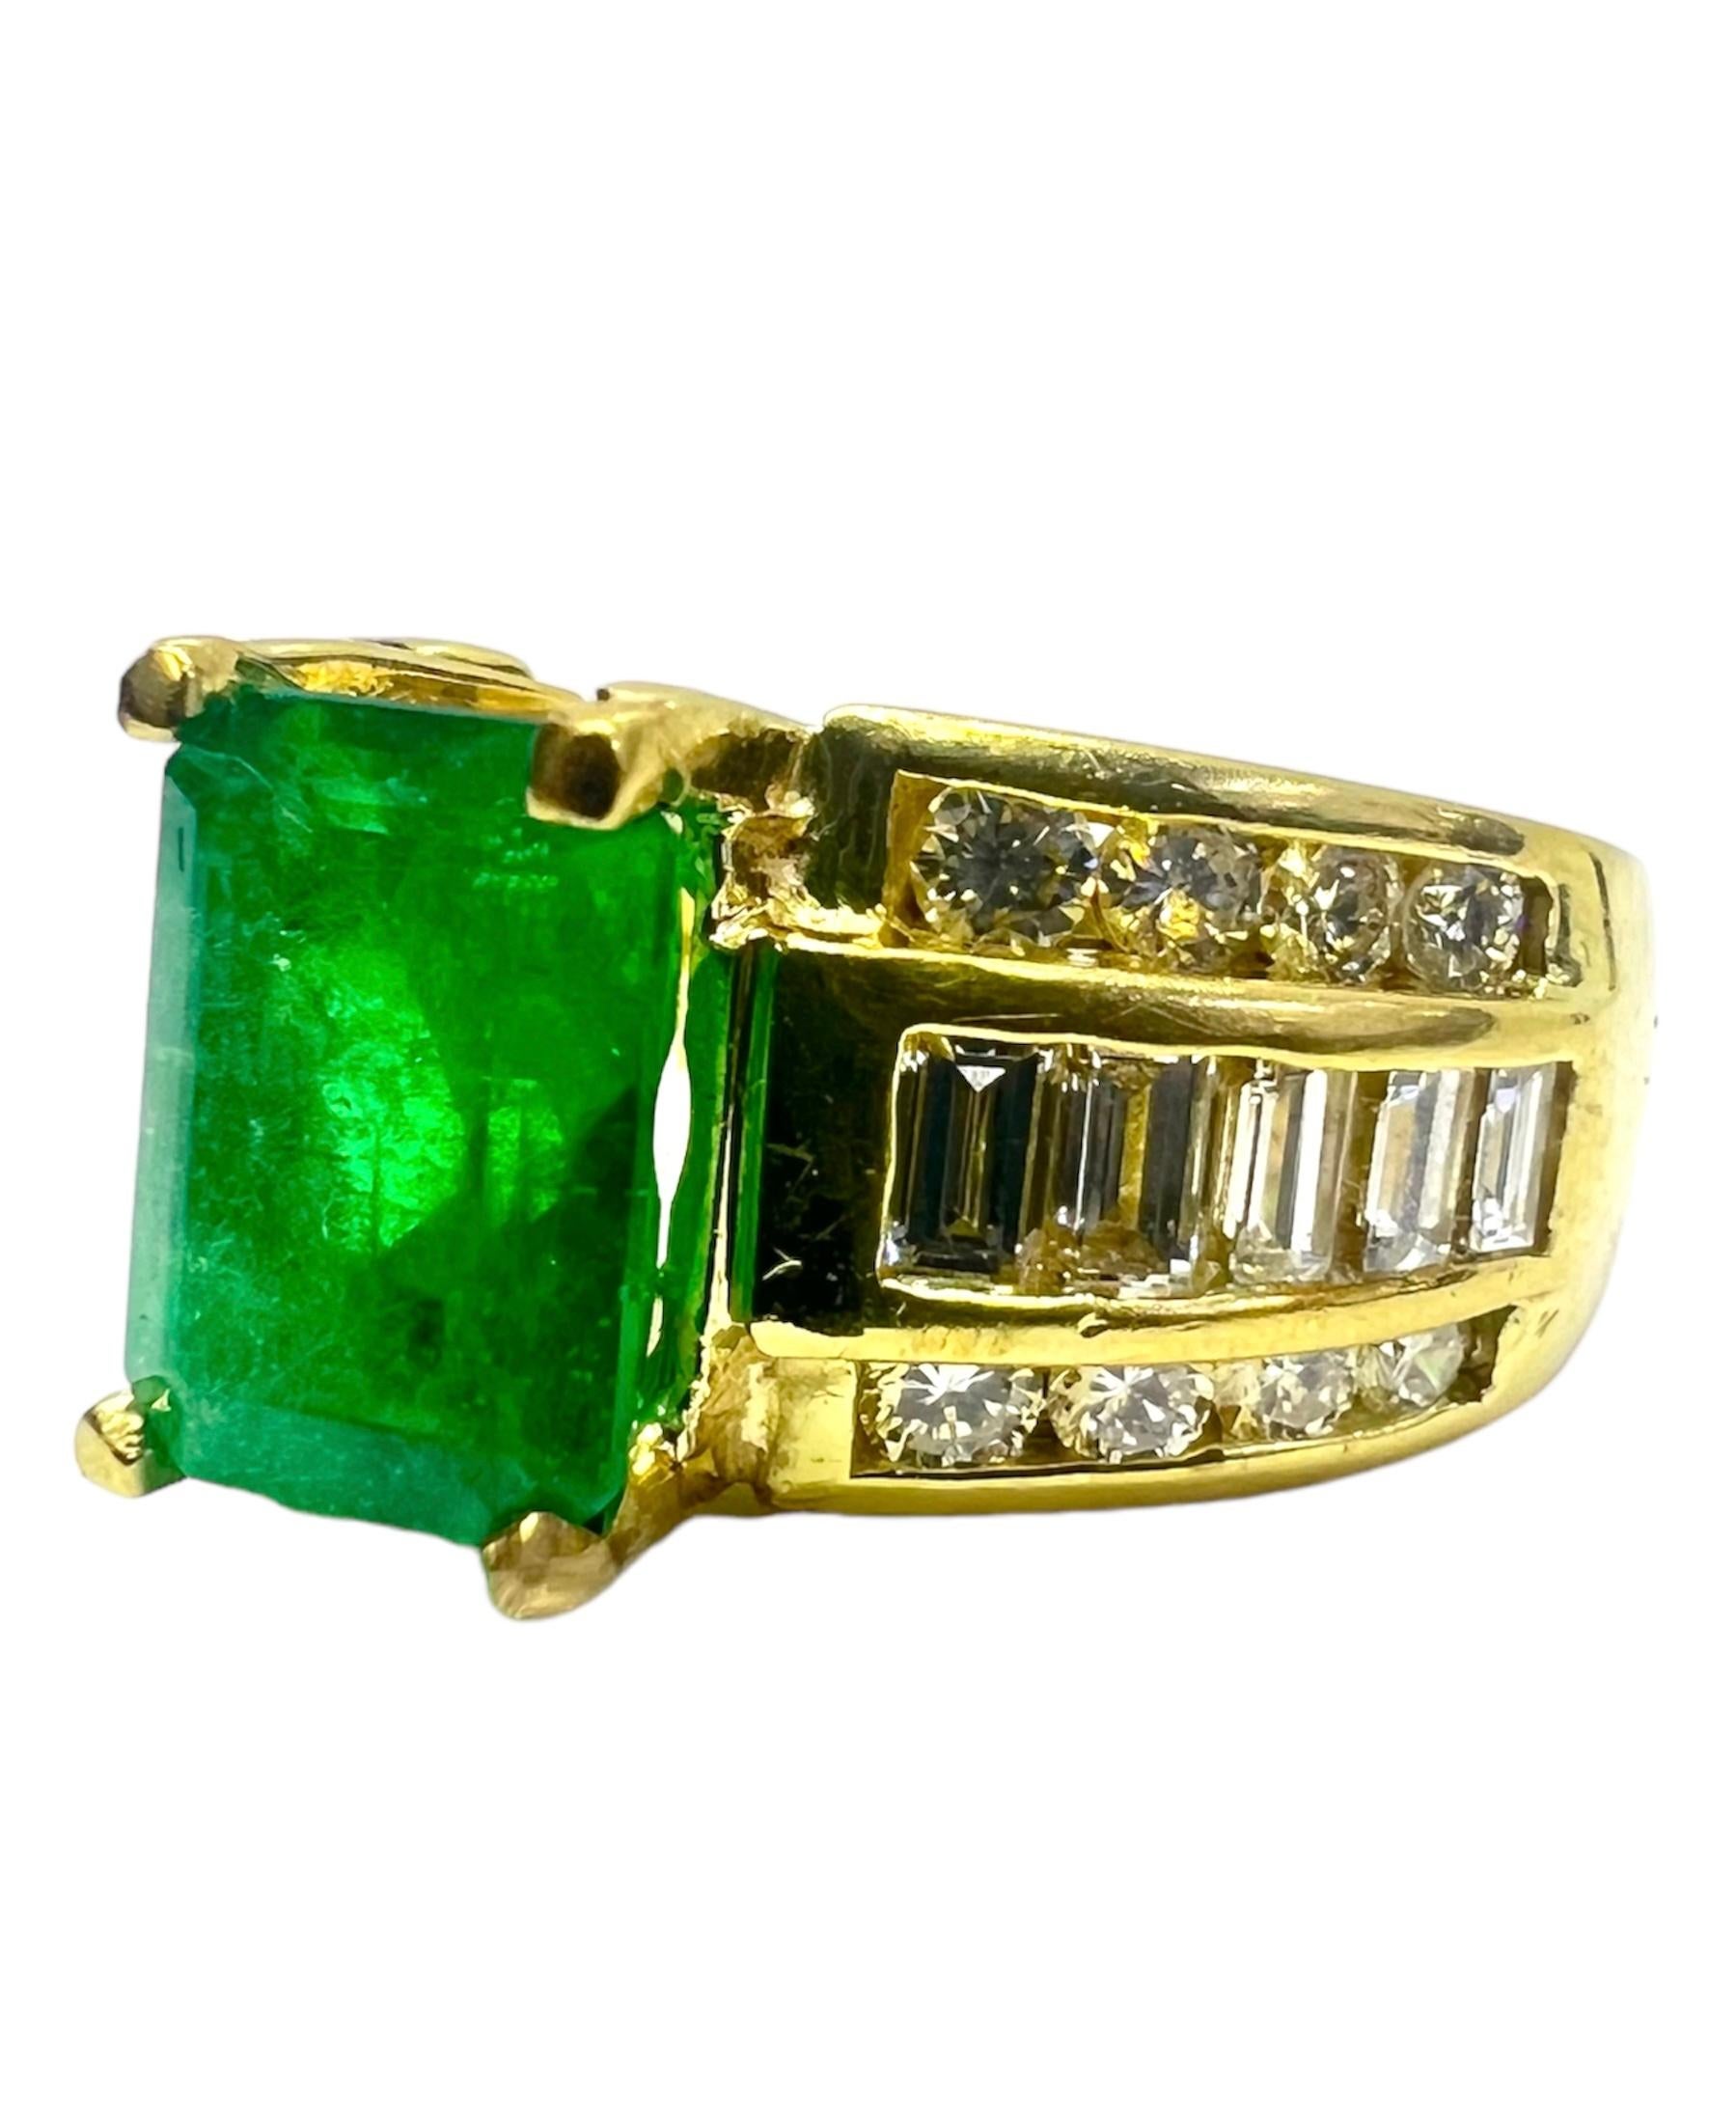 Gelbgoldring mit 2,75 Karat Smaragd in der Mitte, mit Diamanten verziert.

Sophia D von Joseph Dardashti LTD ist seit 35 Jahren weltweit bekannt und lässt sich vom klassischen Art-Déco-Design inspirieren, das mit modernen Fertigungstechniken